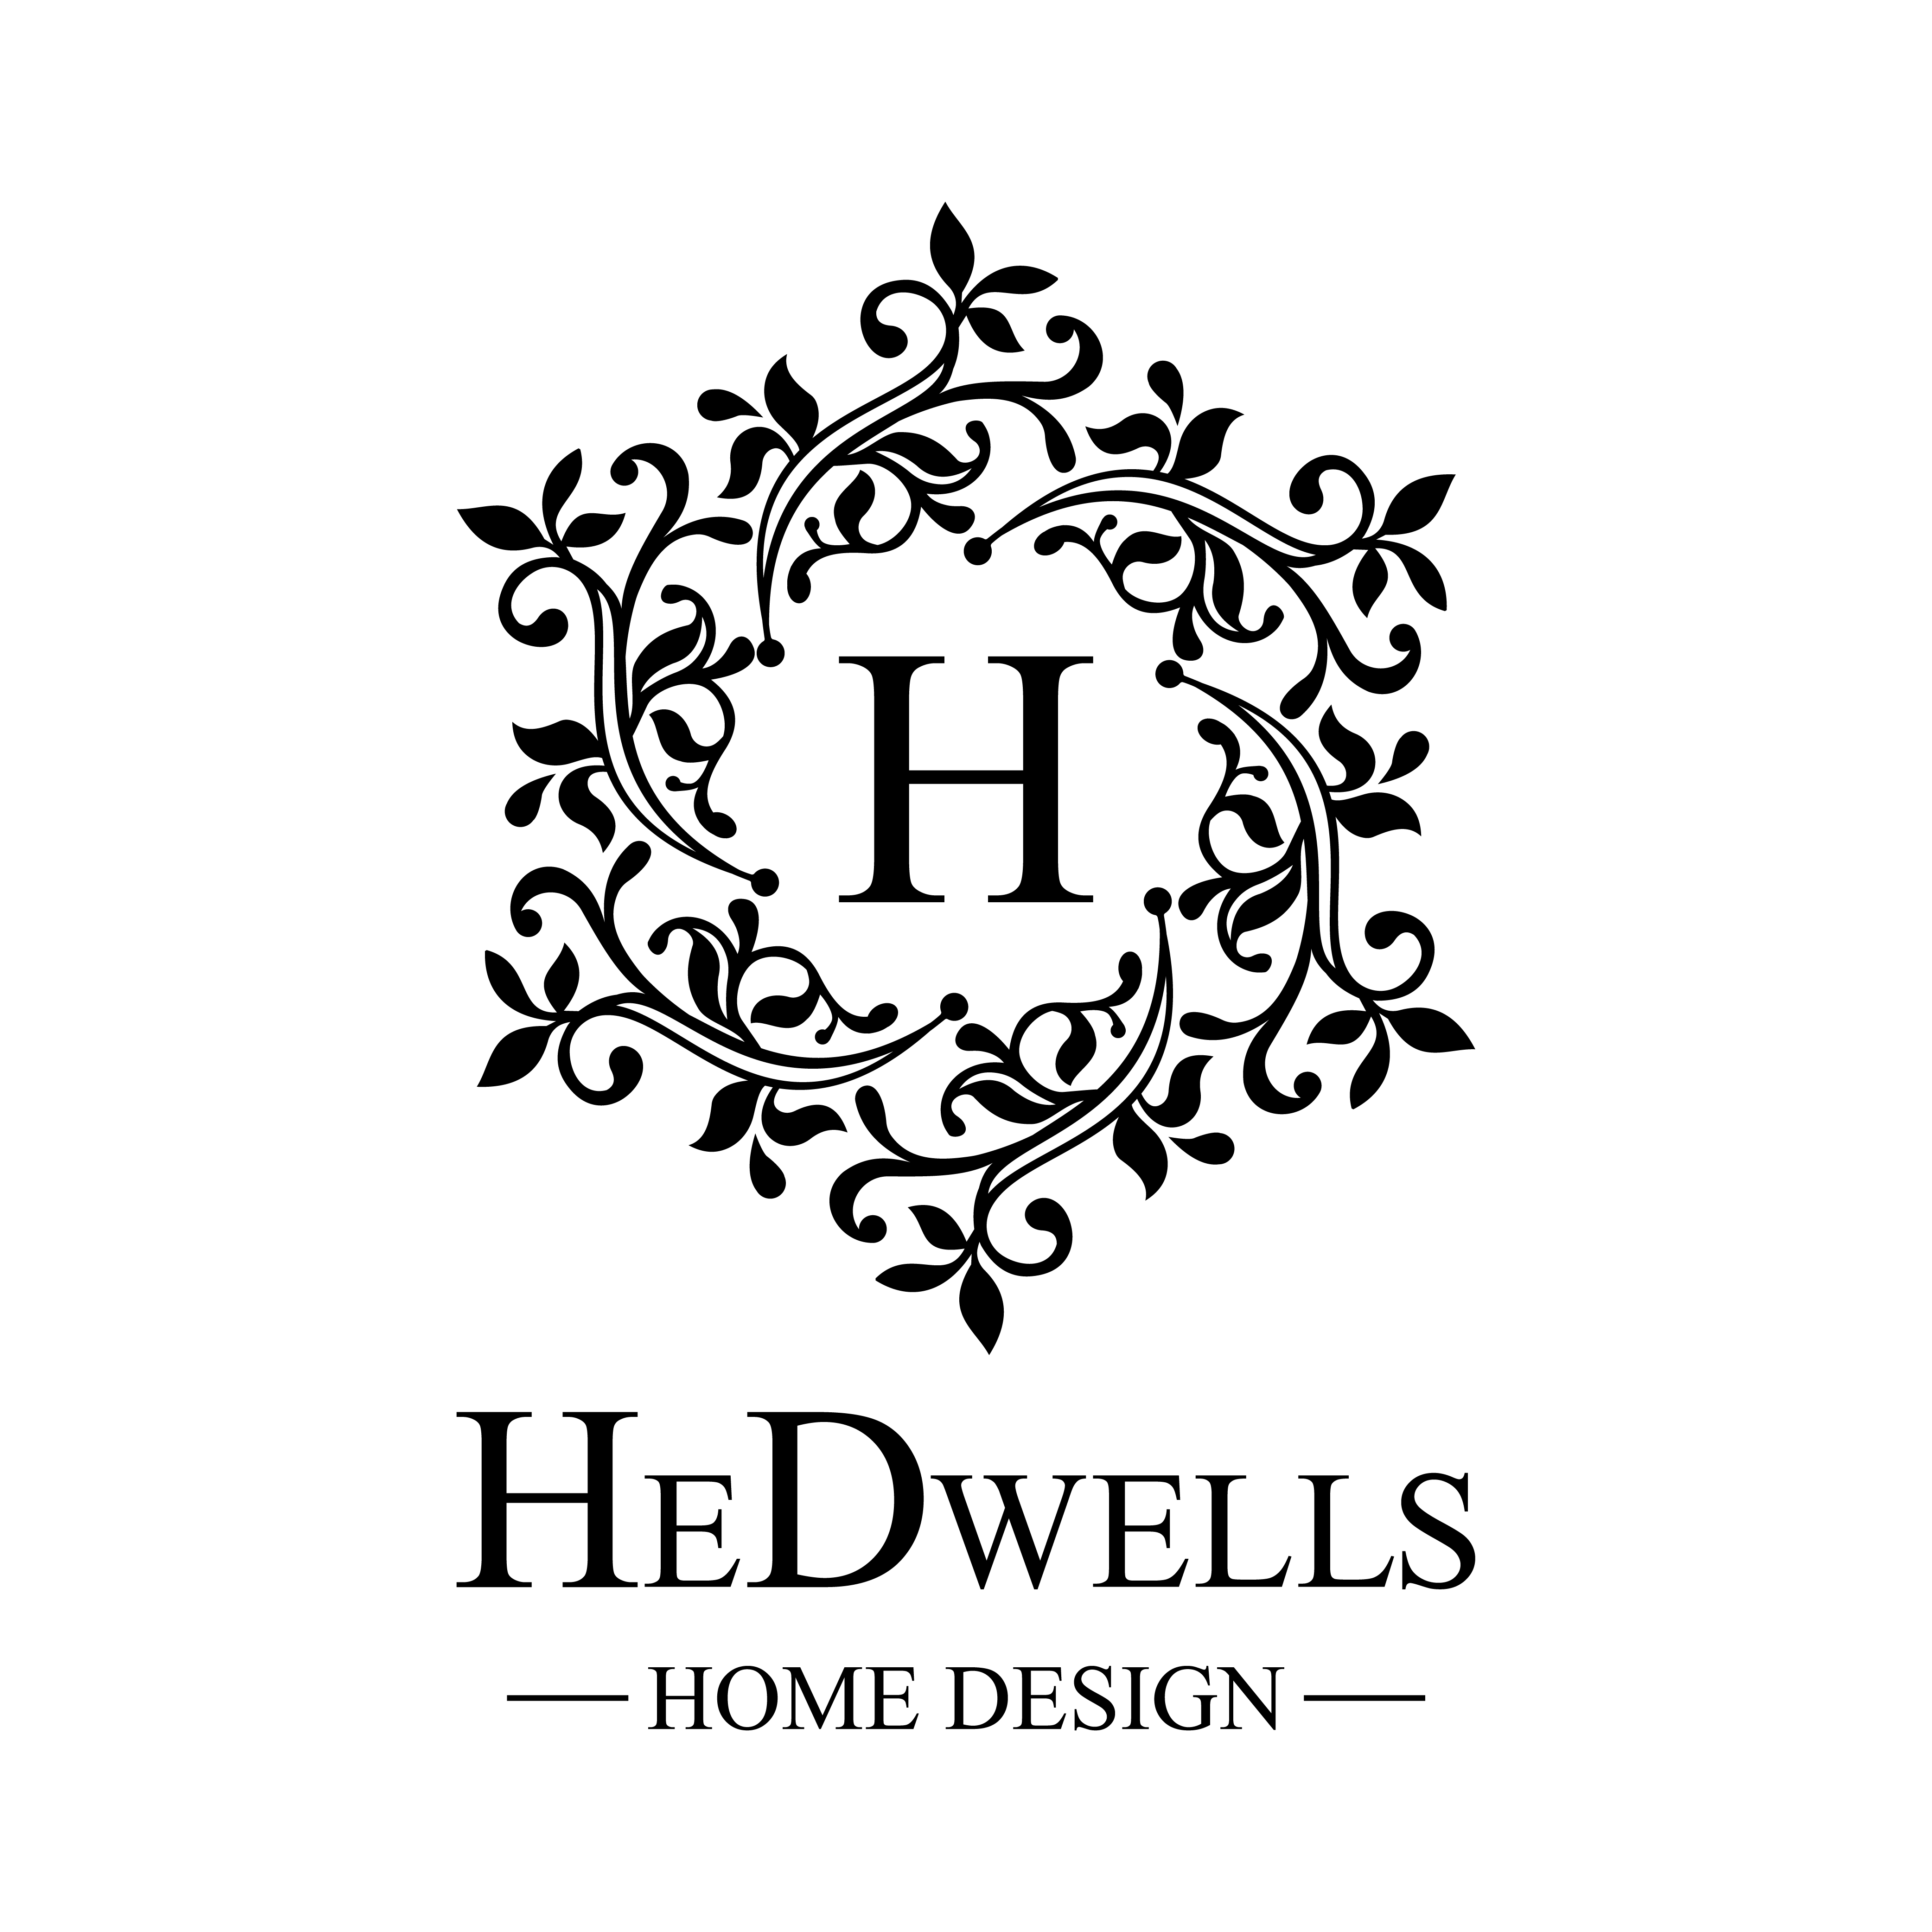 hedwells home design logo